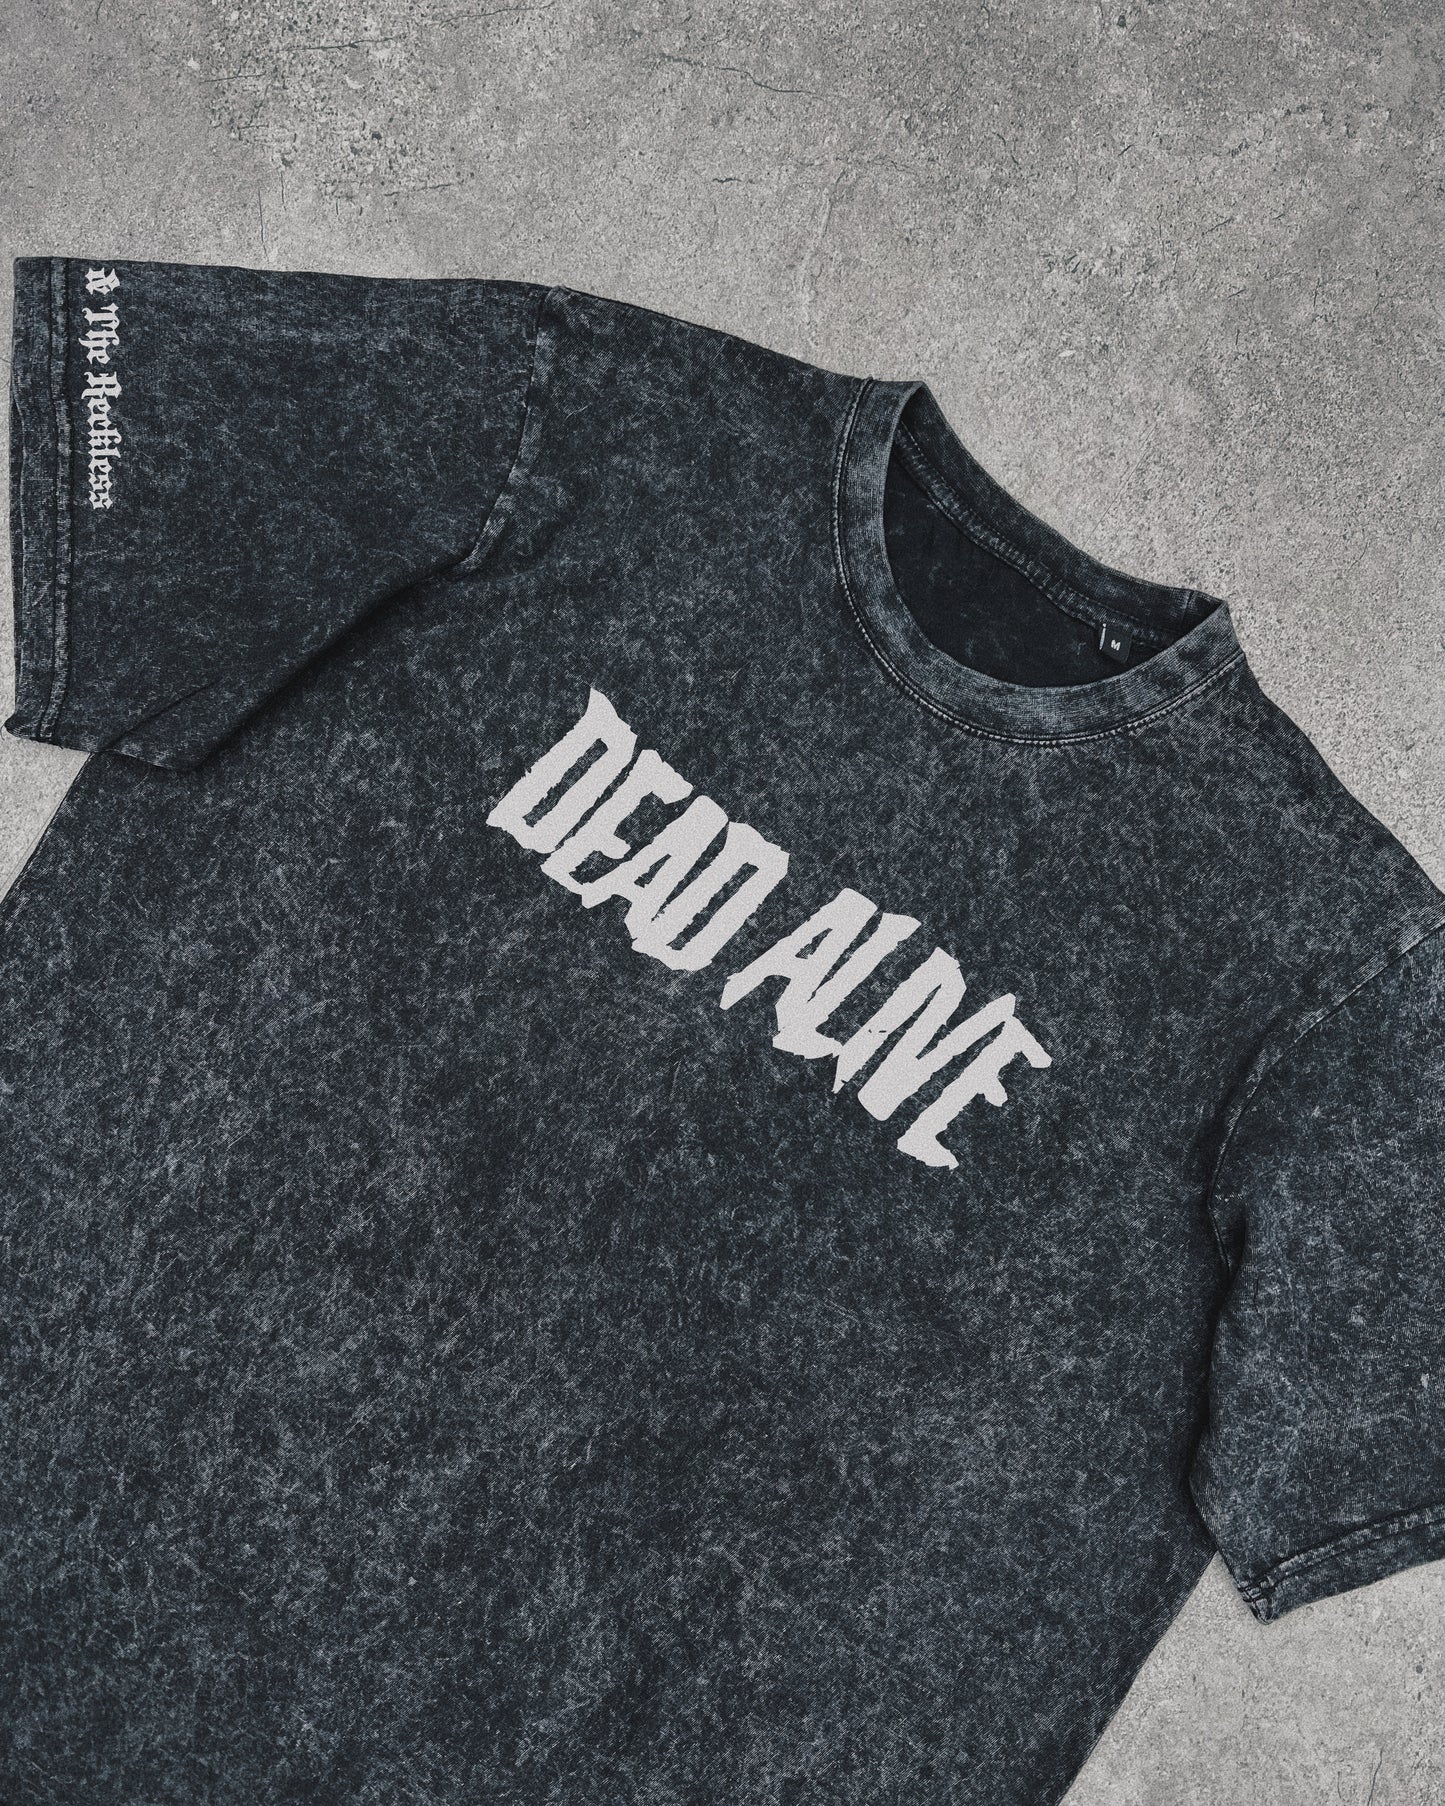 Dead Alive - T-Shirt